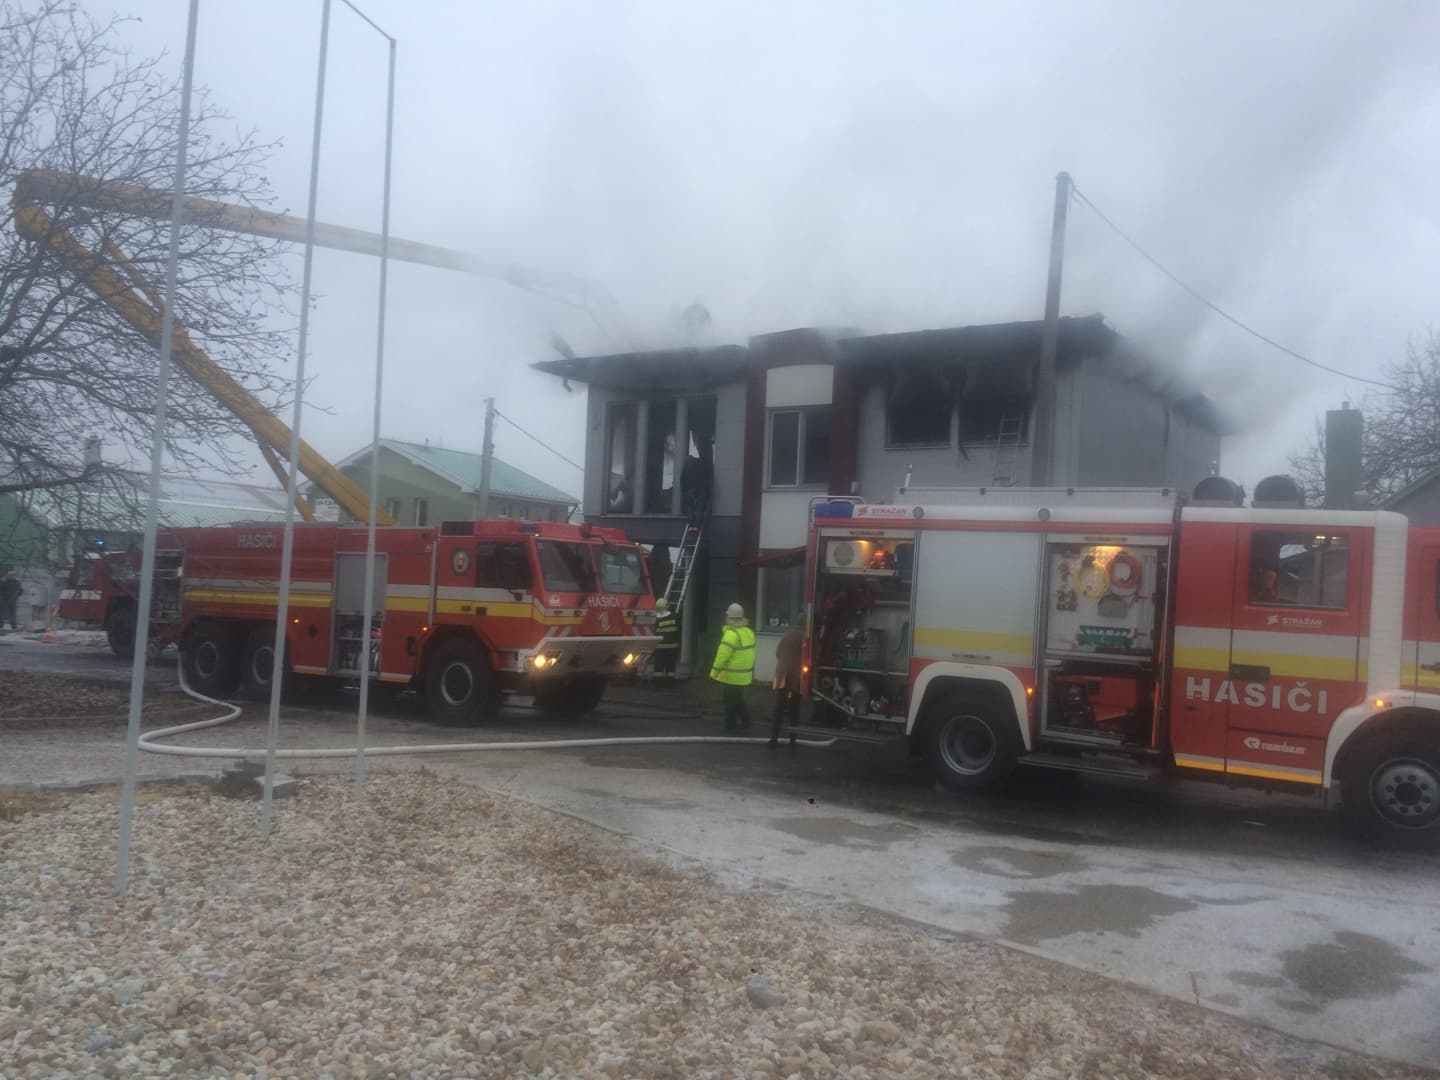 Irodaépület lángolt Dunaszerdahelyen, egy anyát és hároméves gyermekét mentették a tűzoltók!